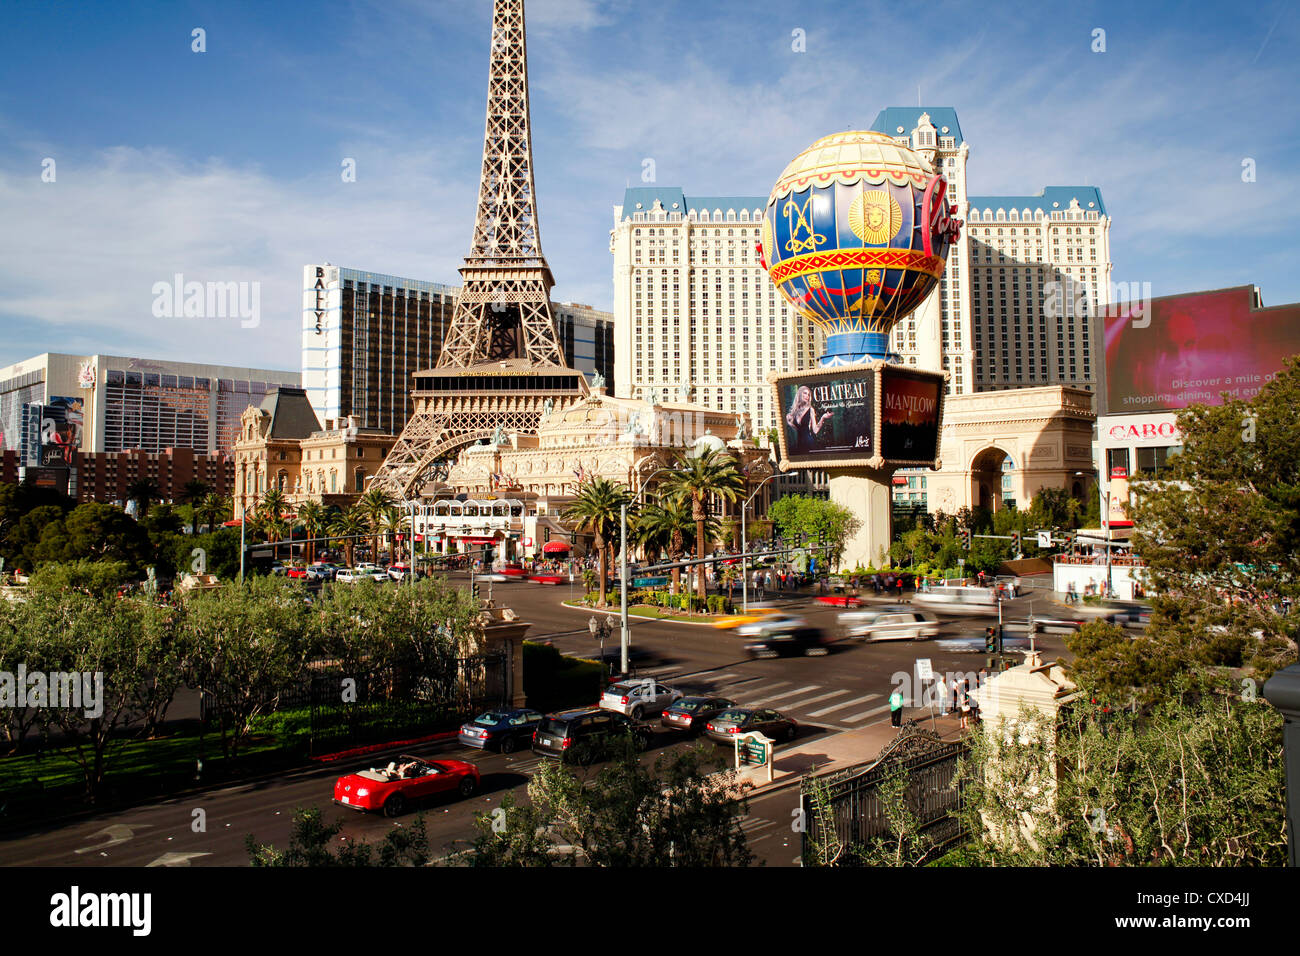 Paris-Casino auf dem Strip, Las Vegas, Nevada, Vereinigte Staaten von Amerika, Nordamerika Stockfoto